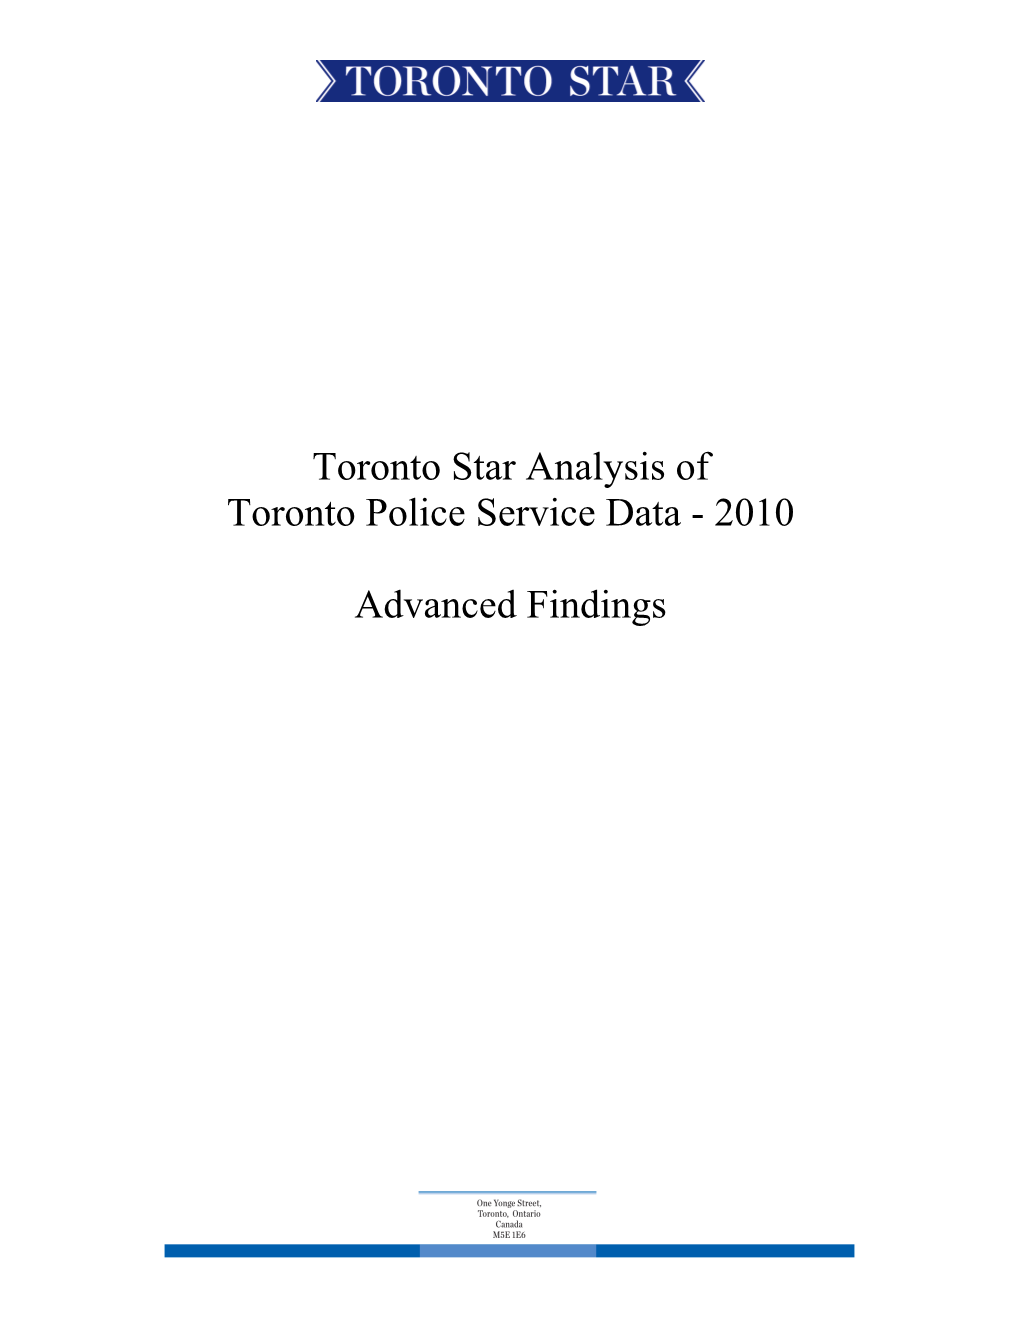 Toronto Star Analysis of Toronto Police Service Data - 2010